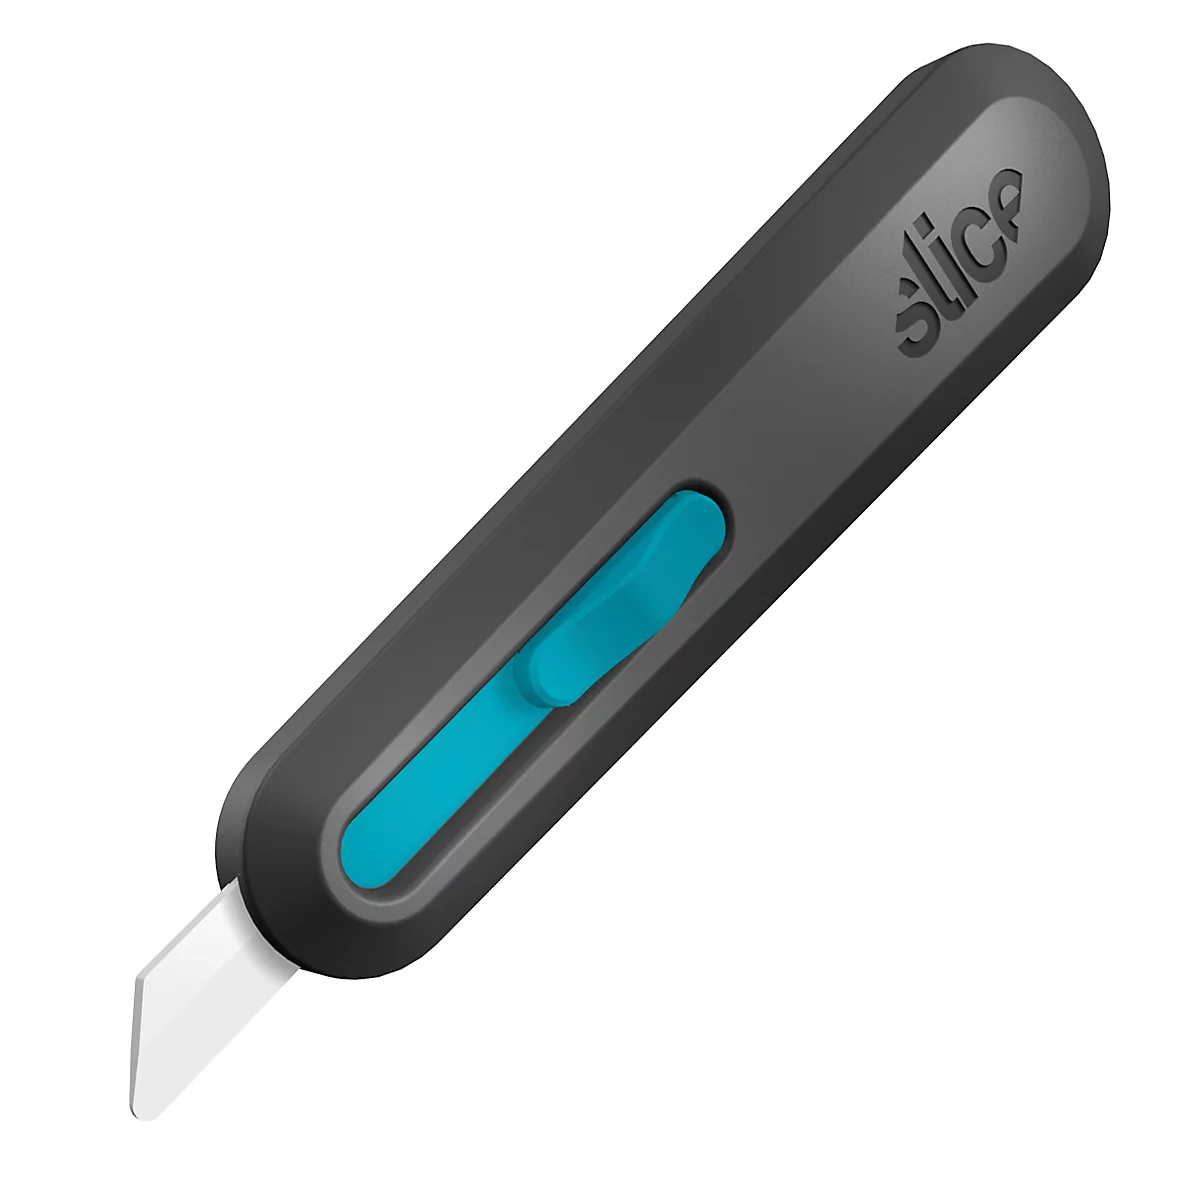 Slice cutter, met intelligente intrekking van het mes, met Ergo-Pull schuifmechanisme